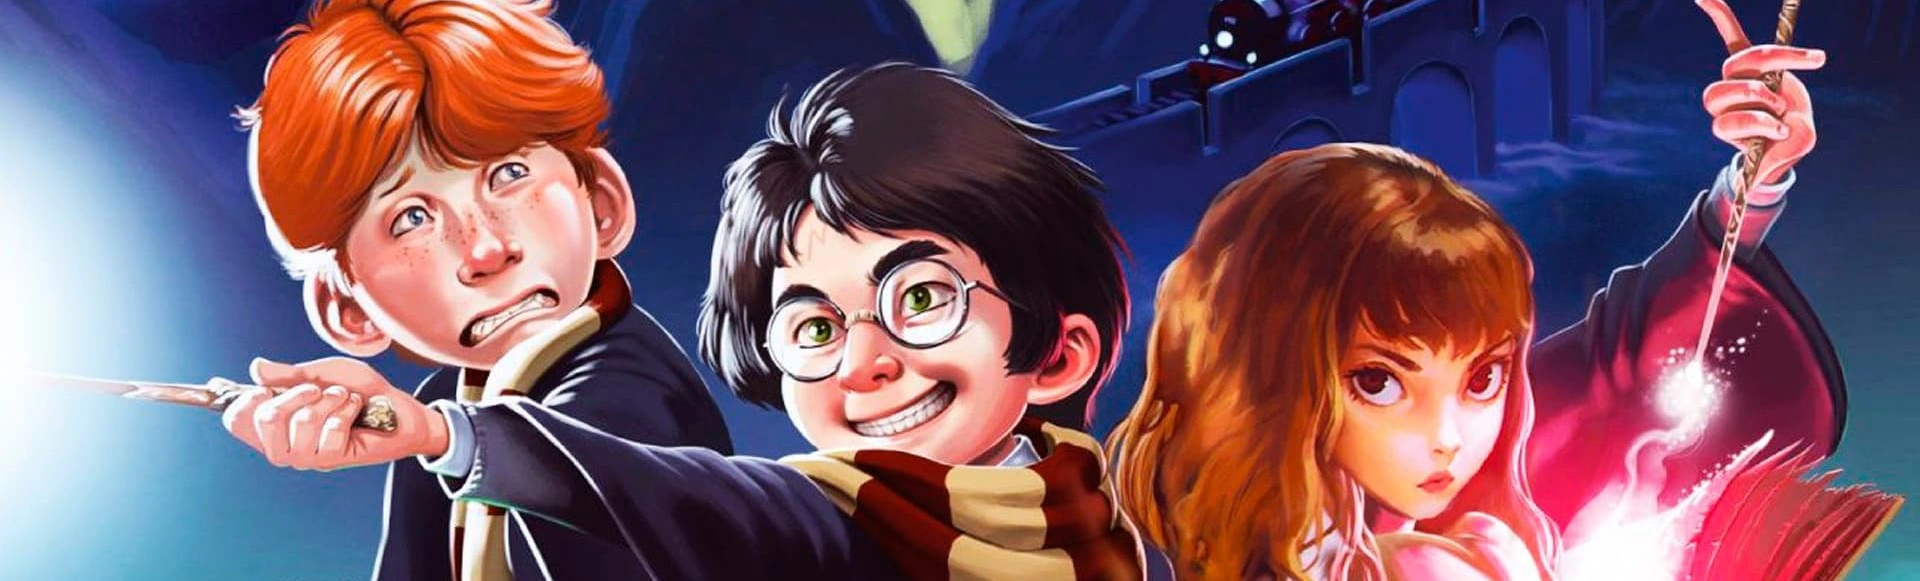 «Гарри и школа волшебства»: Волшебное шоу мирового уровня ожидает зрителей!